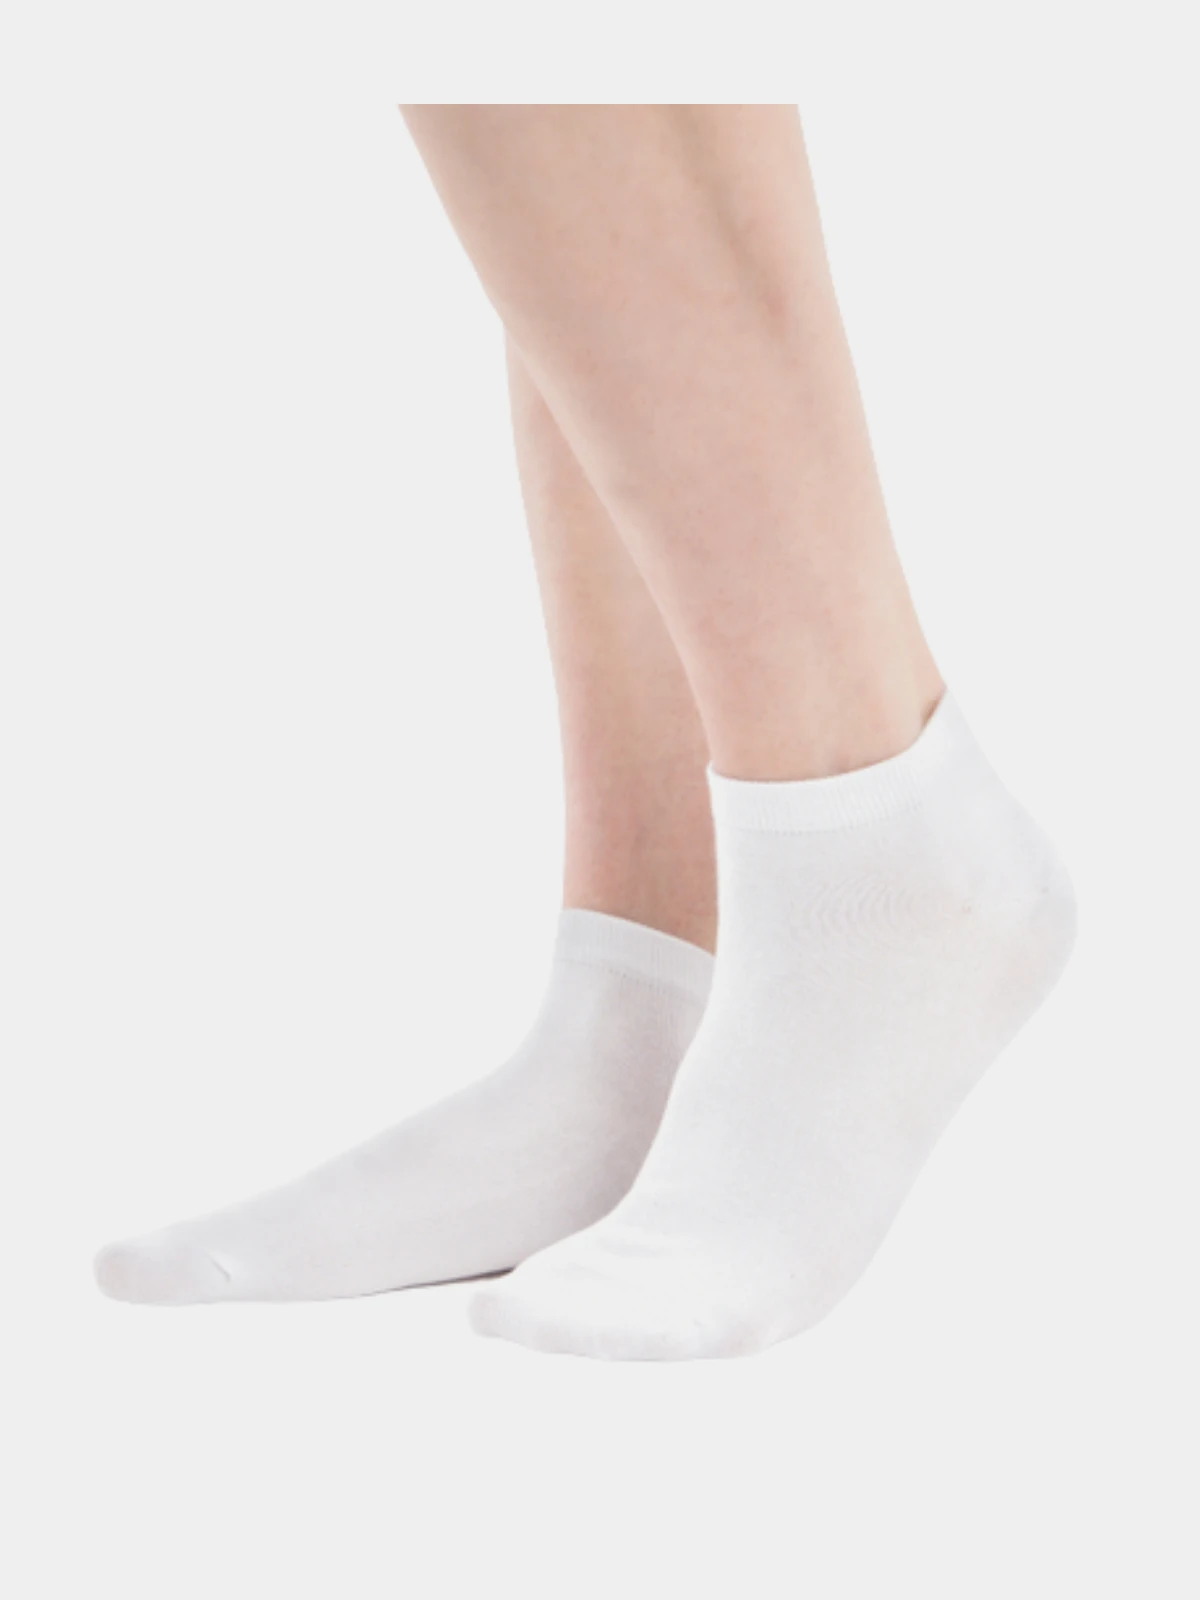 Низкие носочки. Носки Morrah "25-151" белые высокие. Короткие носки. Белые носки. Носки женские белые.